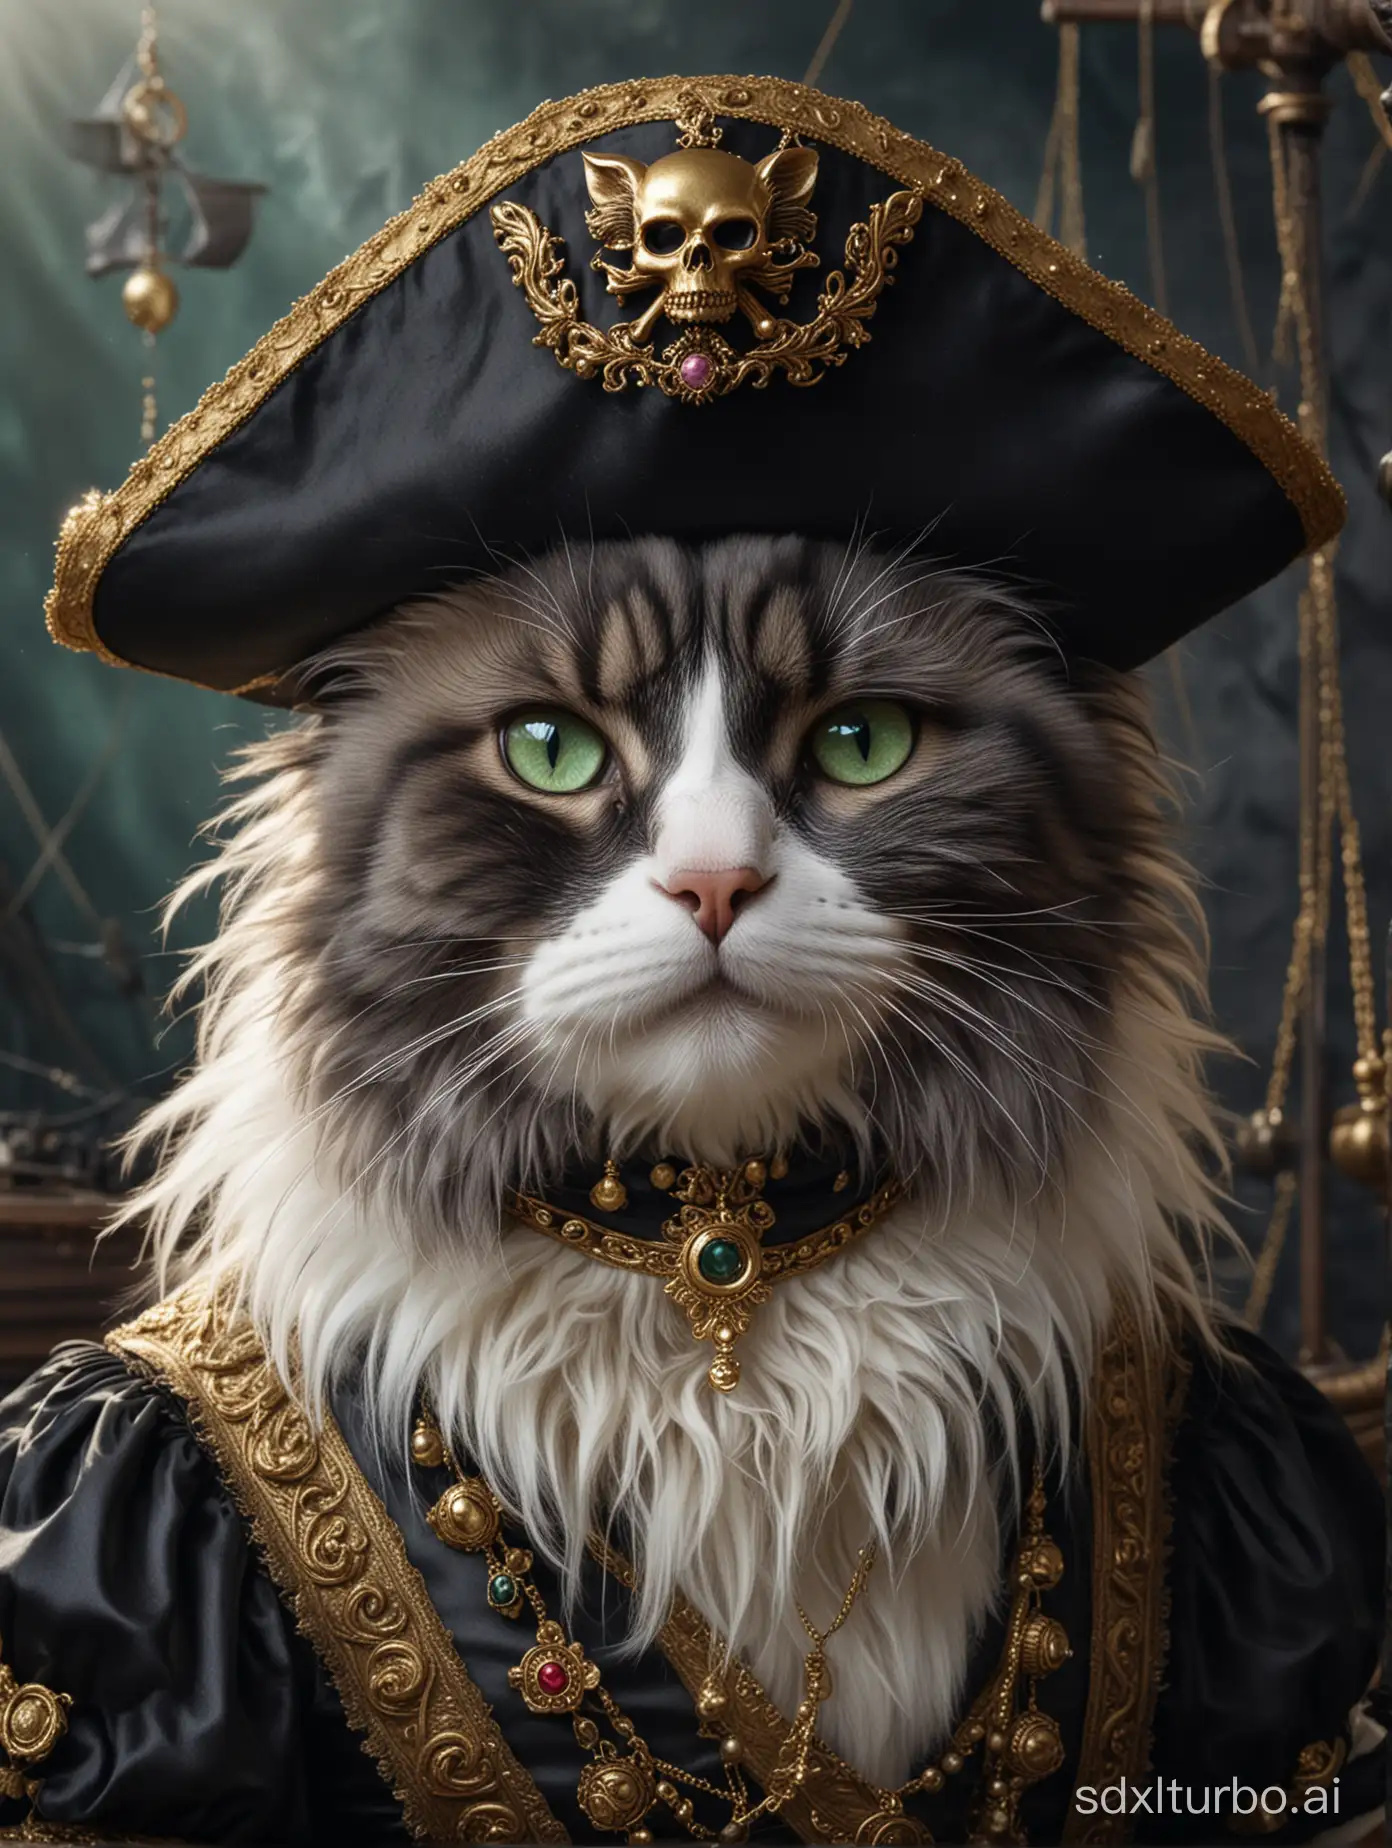 布偶猫船长的海盗服装饰有精美的天体珠宝和闪闪发光的金饰，散发着贵族掠夺的气息。她奢华的皮毛闪耀着深乌木和银色的色调，经过精心修饰，却展现出海上生活的痕迹。这幅引人注目的图像是一幅数字渲染的绘画，以高清晰度捕捉每一个复杂的细节。船长戴着三角帽，一双翠绿的眼睛锐利地凝视着外面，在她顽皮的外表下隐藏着一种高贵的优雅，吸引着人们的注意。构图巧妙地平衡了华丽与粗犷，邀请观众深入了解猫科海盗的华丽冒险的神秘故事